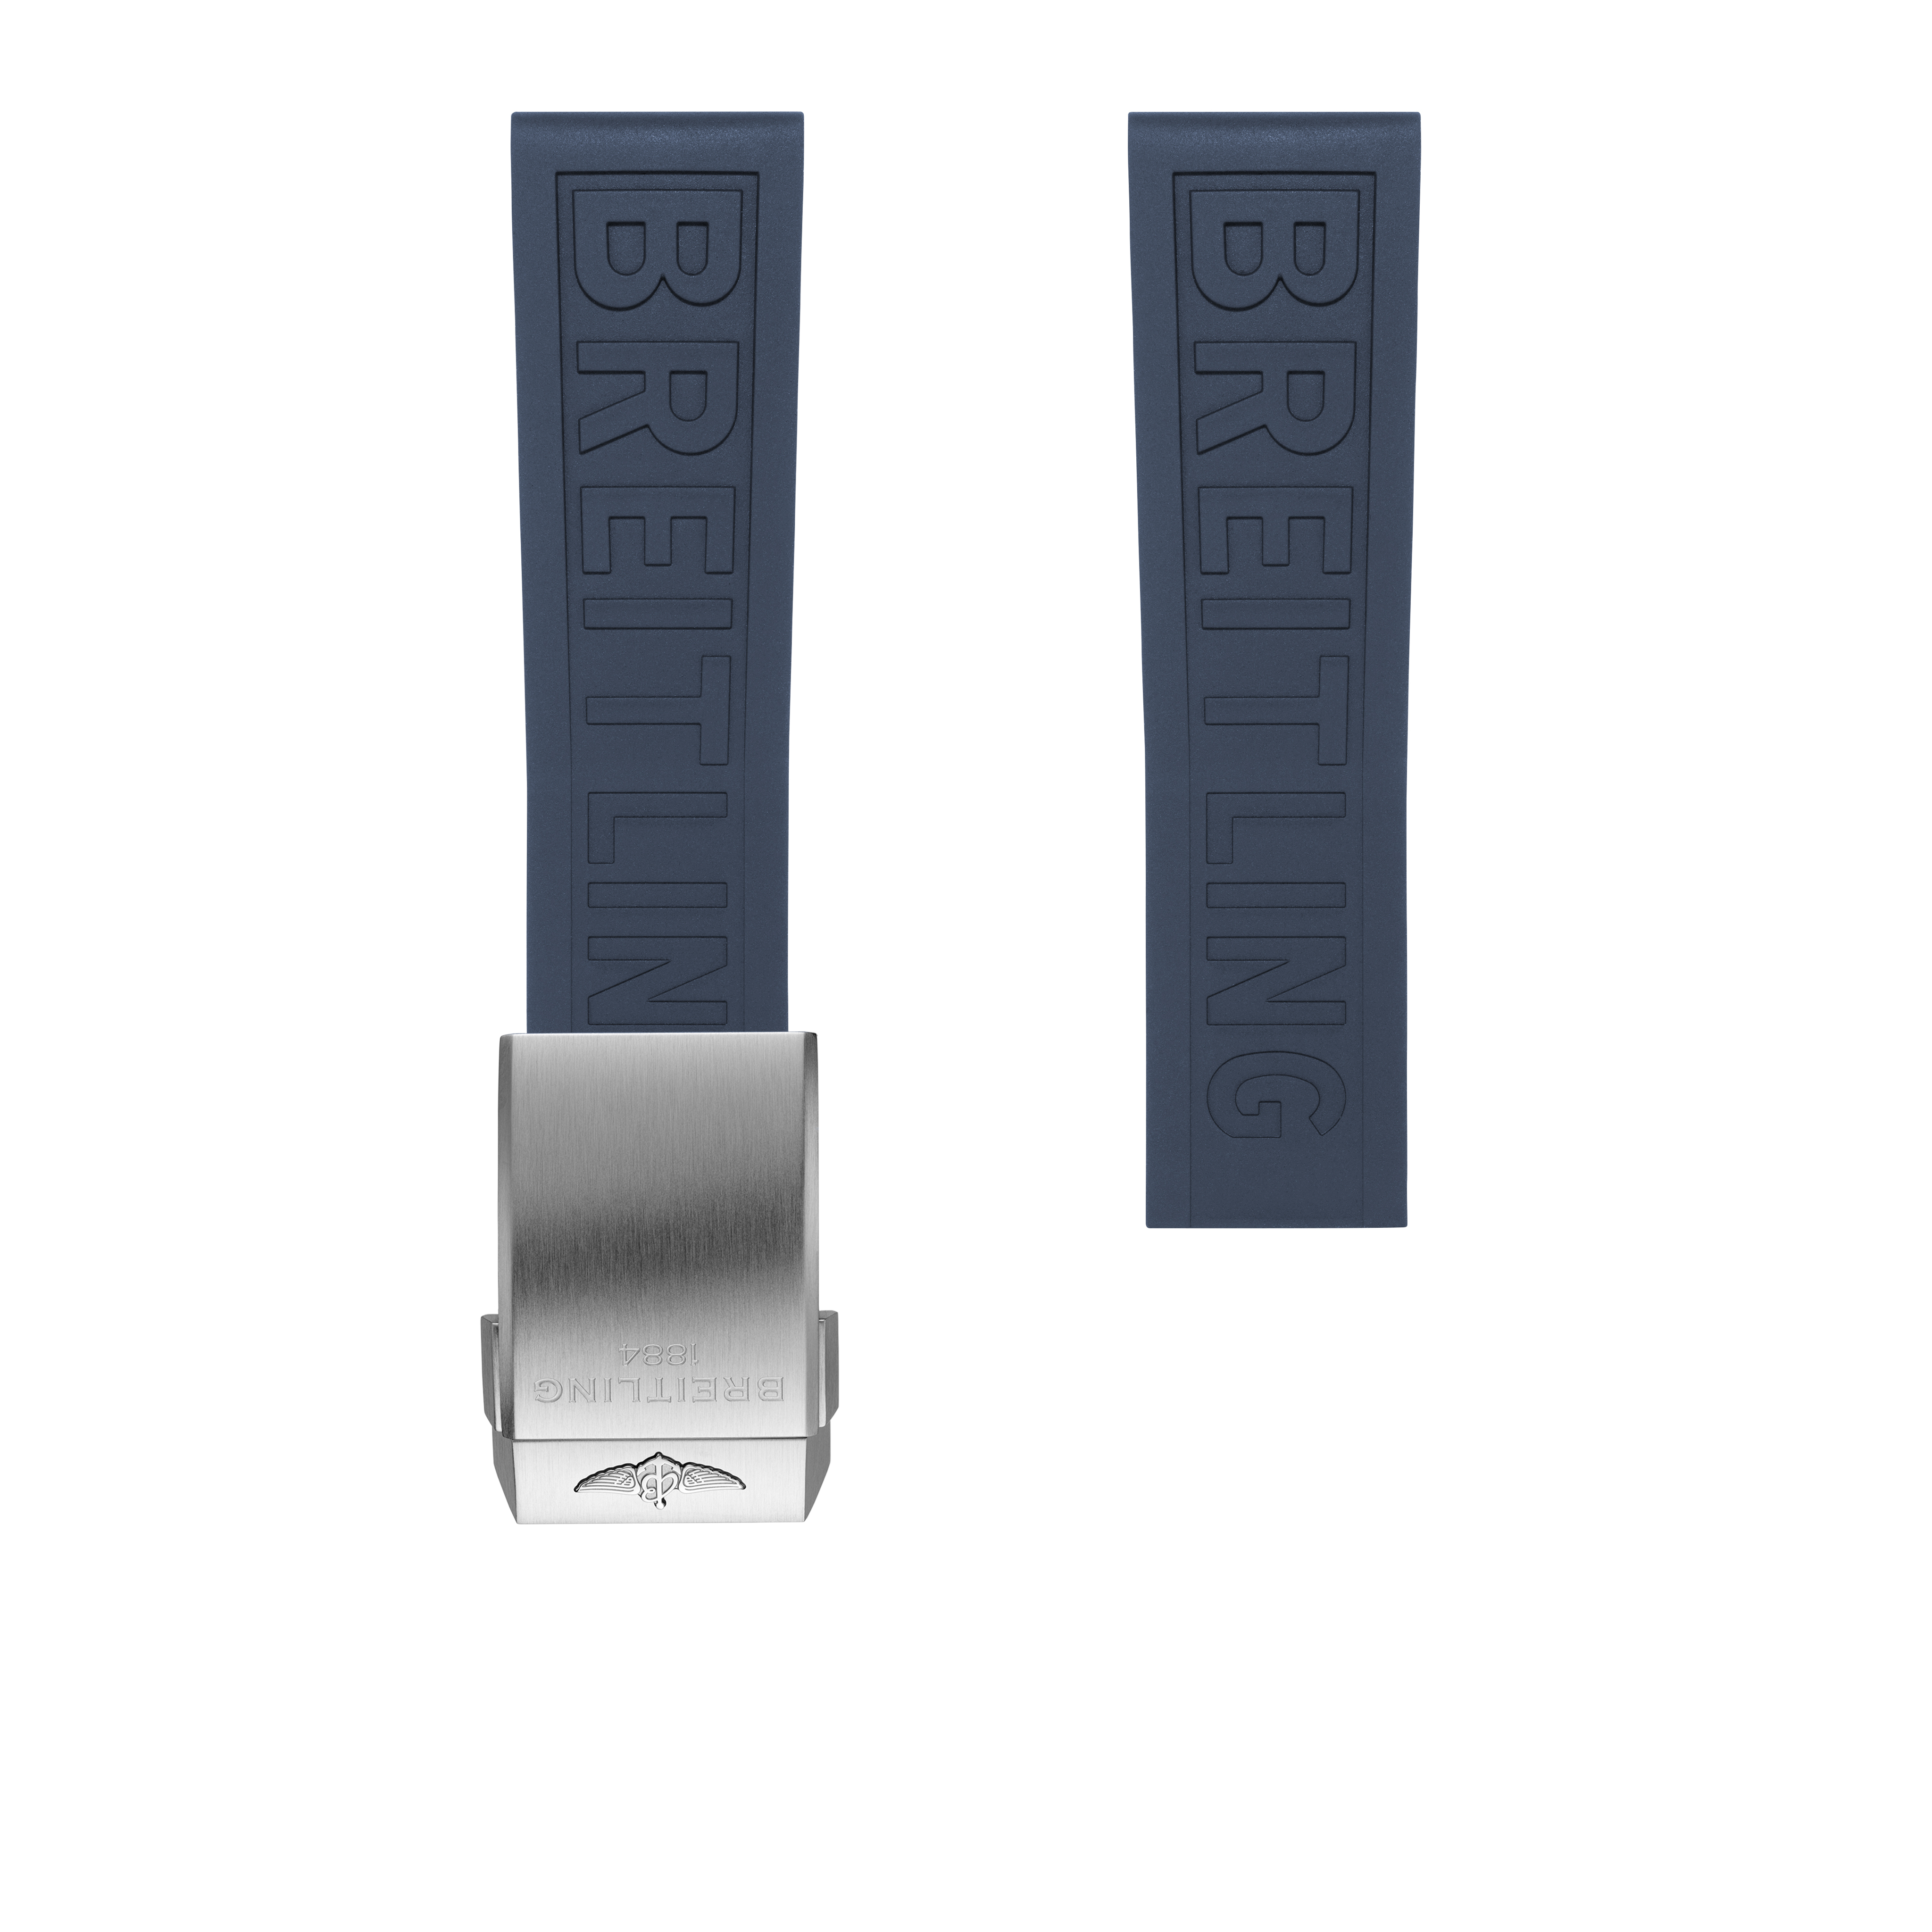 Bracelet en caoutchouc Diver Pro bleu - 22 mm